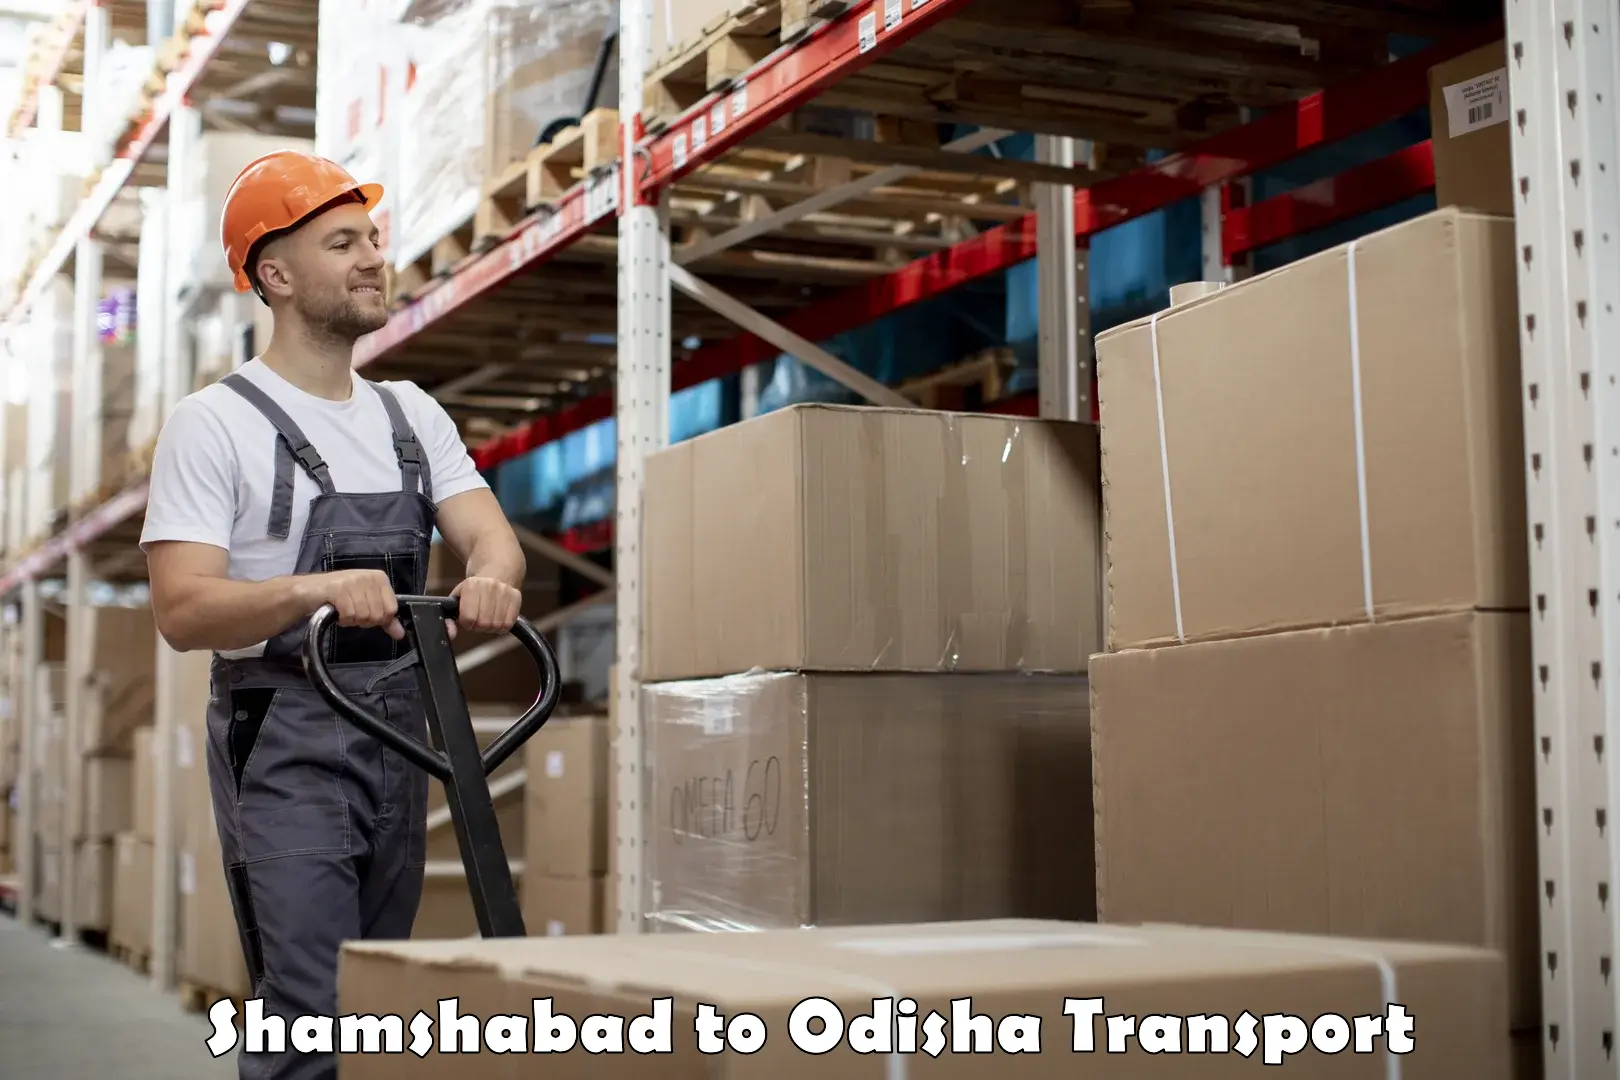 Furniture transport service Shamshabad to Mohana